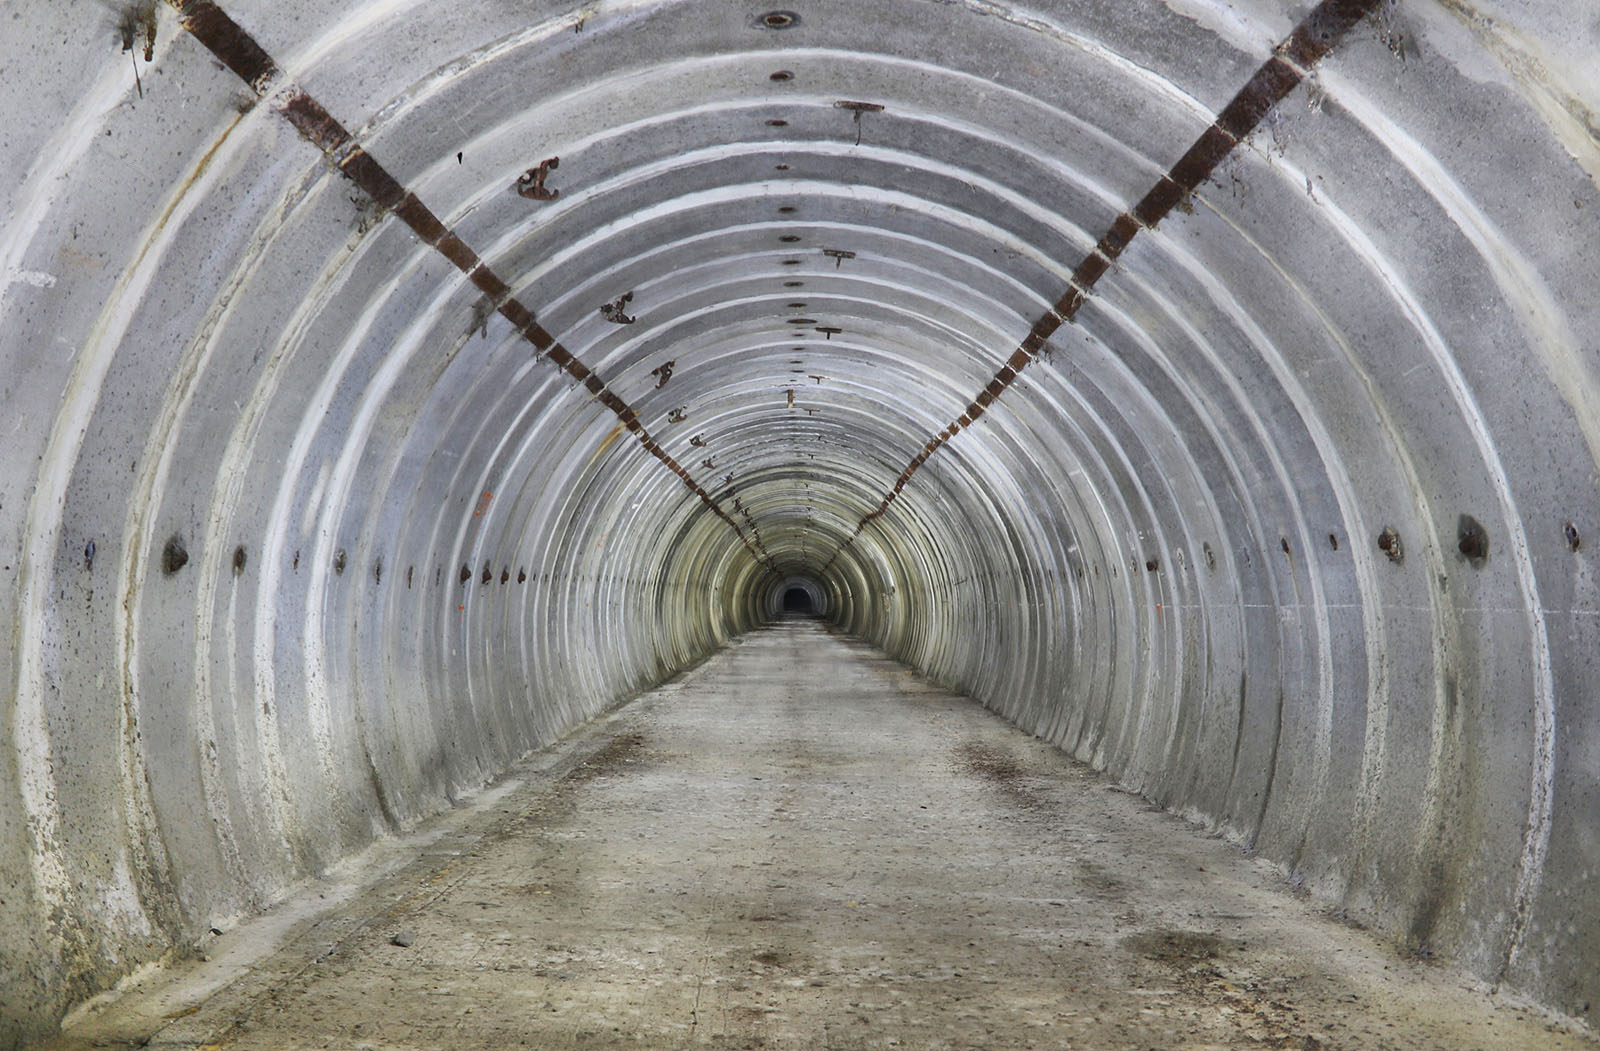 Přes čtvrt kilometru dlouhý tunel se nachází prakticky ve stejném stavu jako v době svého dokončení. Parovod nebyl nikdy dostavěn a tunelem by tak klidně mohlo projet nákladní auto.